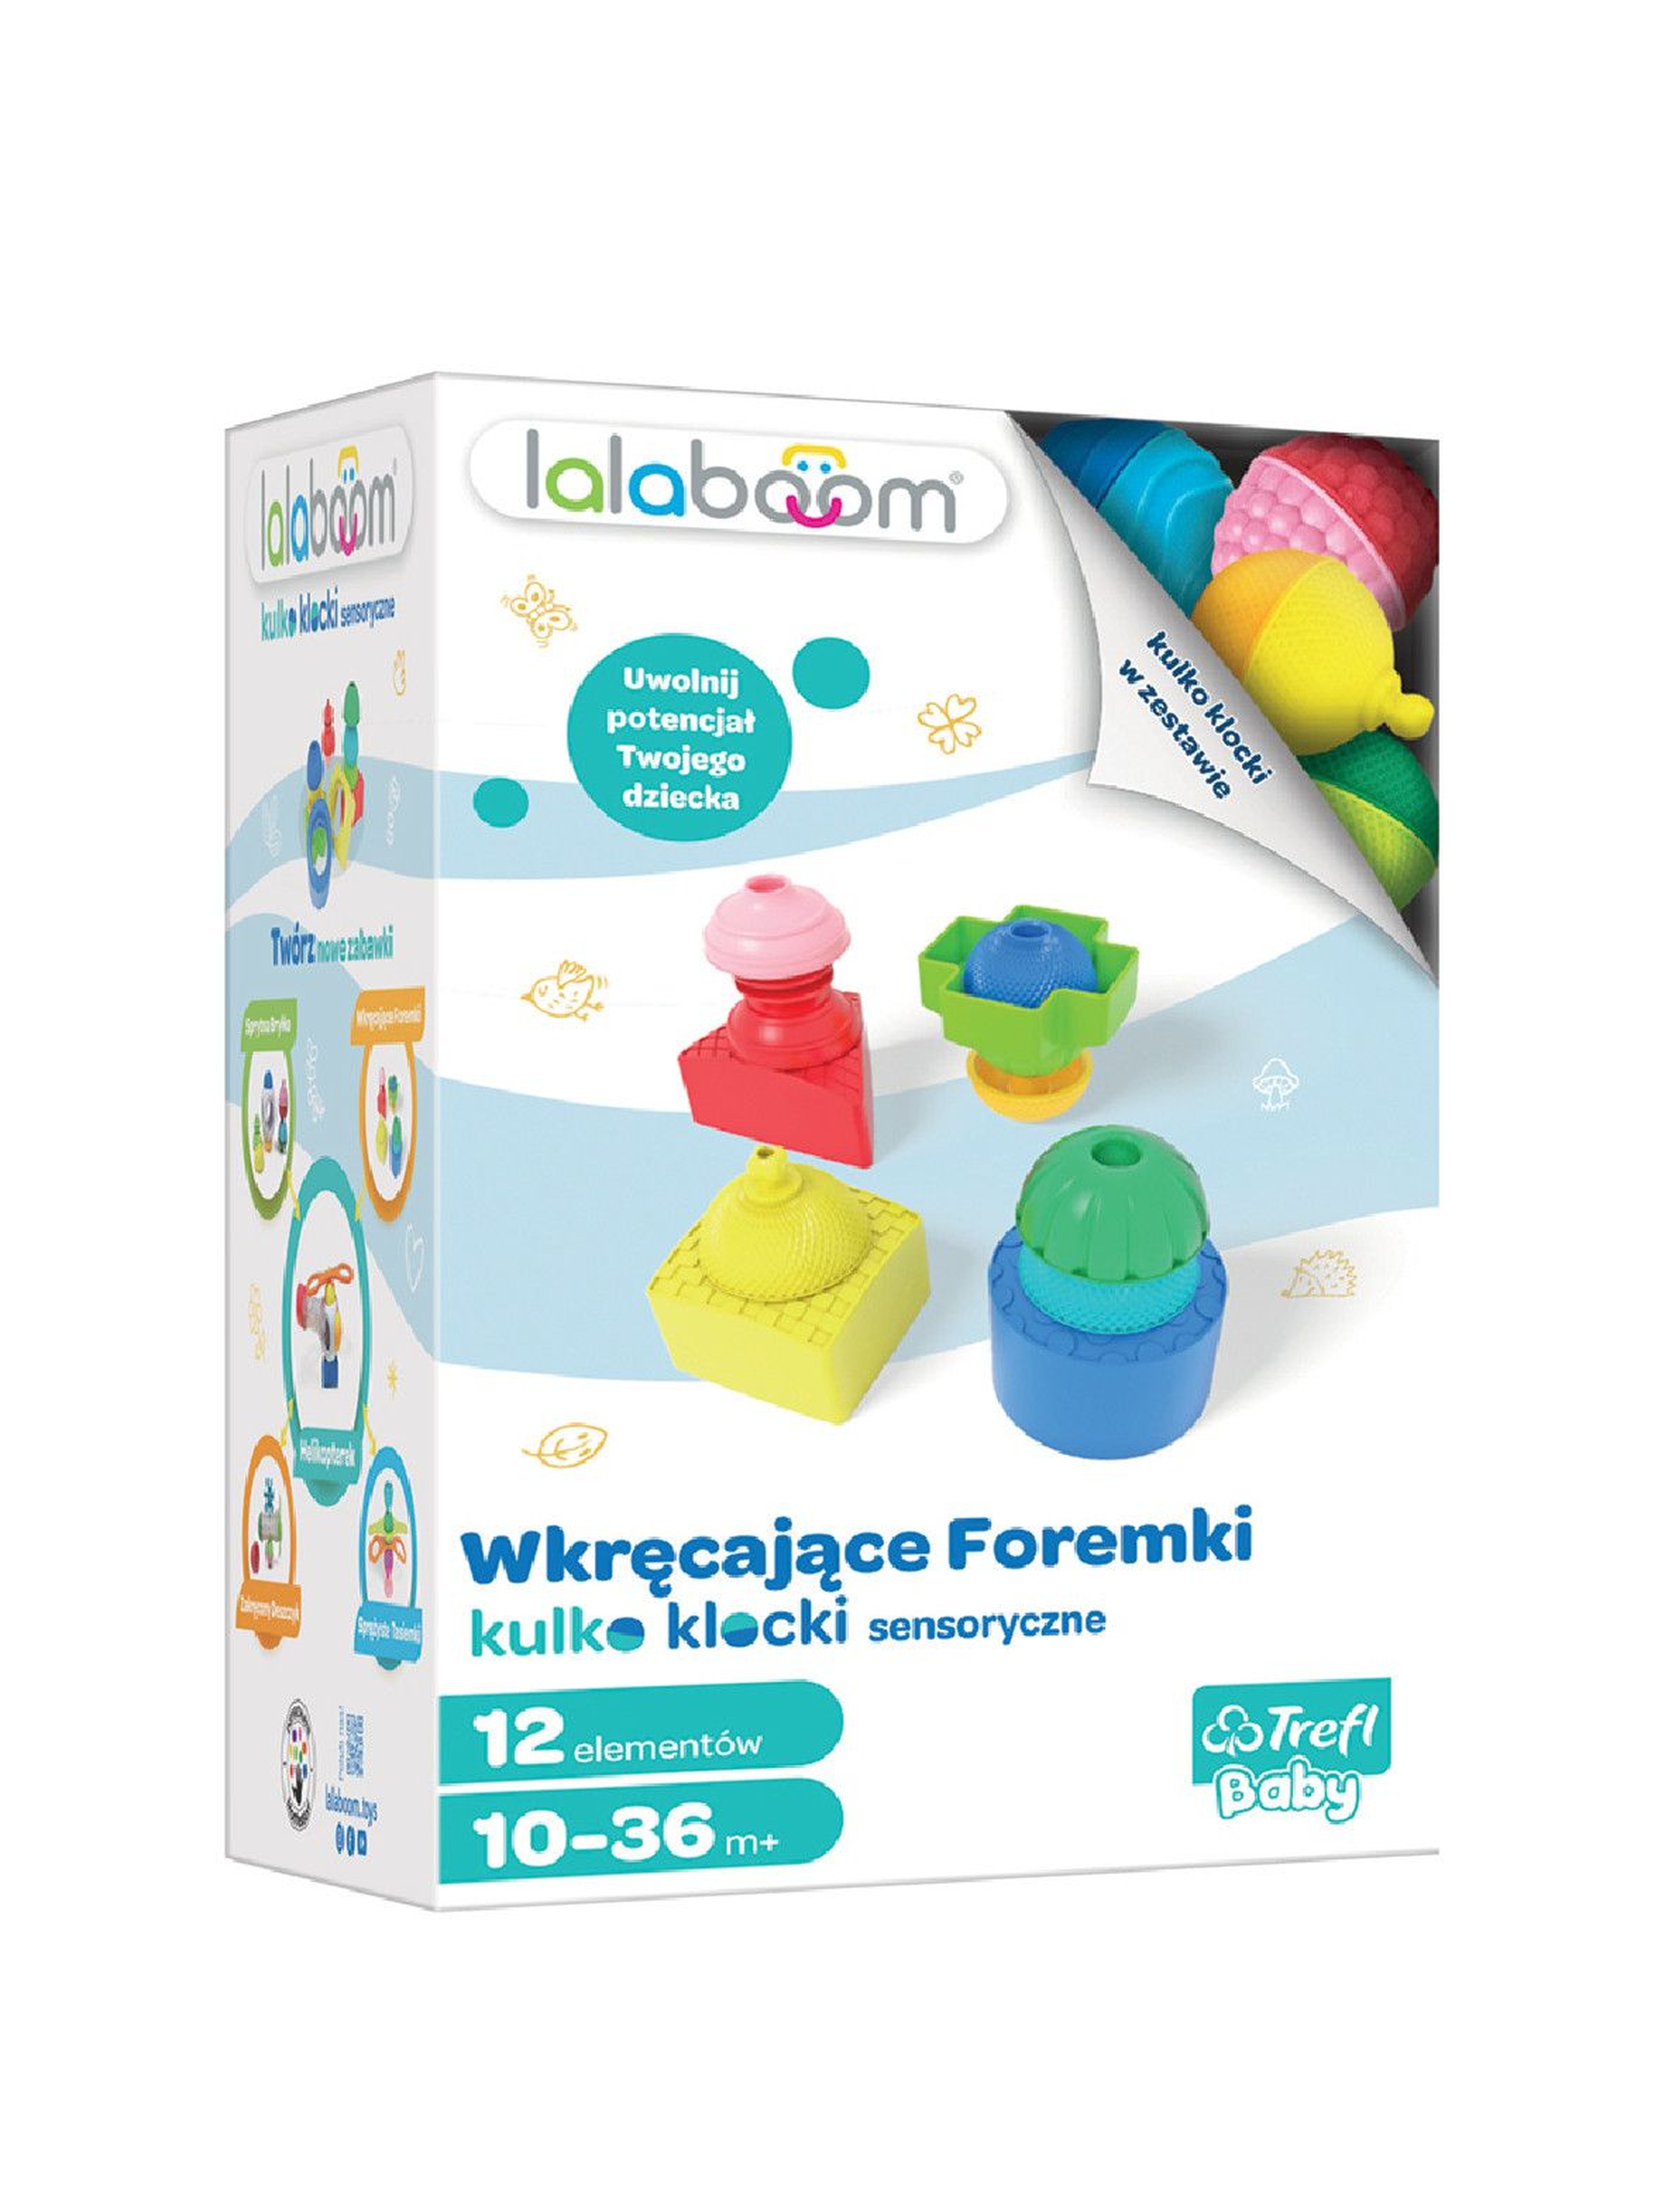 Zabawka sensoryczna - Lalaboom - Mini set - Wkręcające Foremki